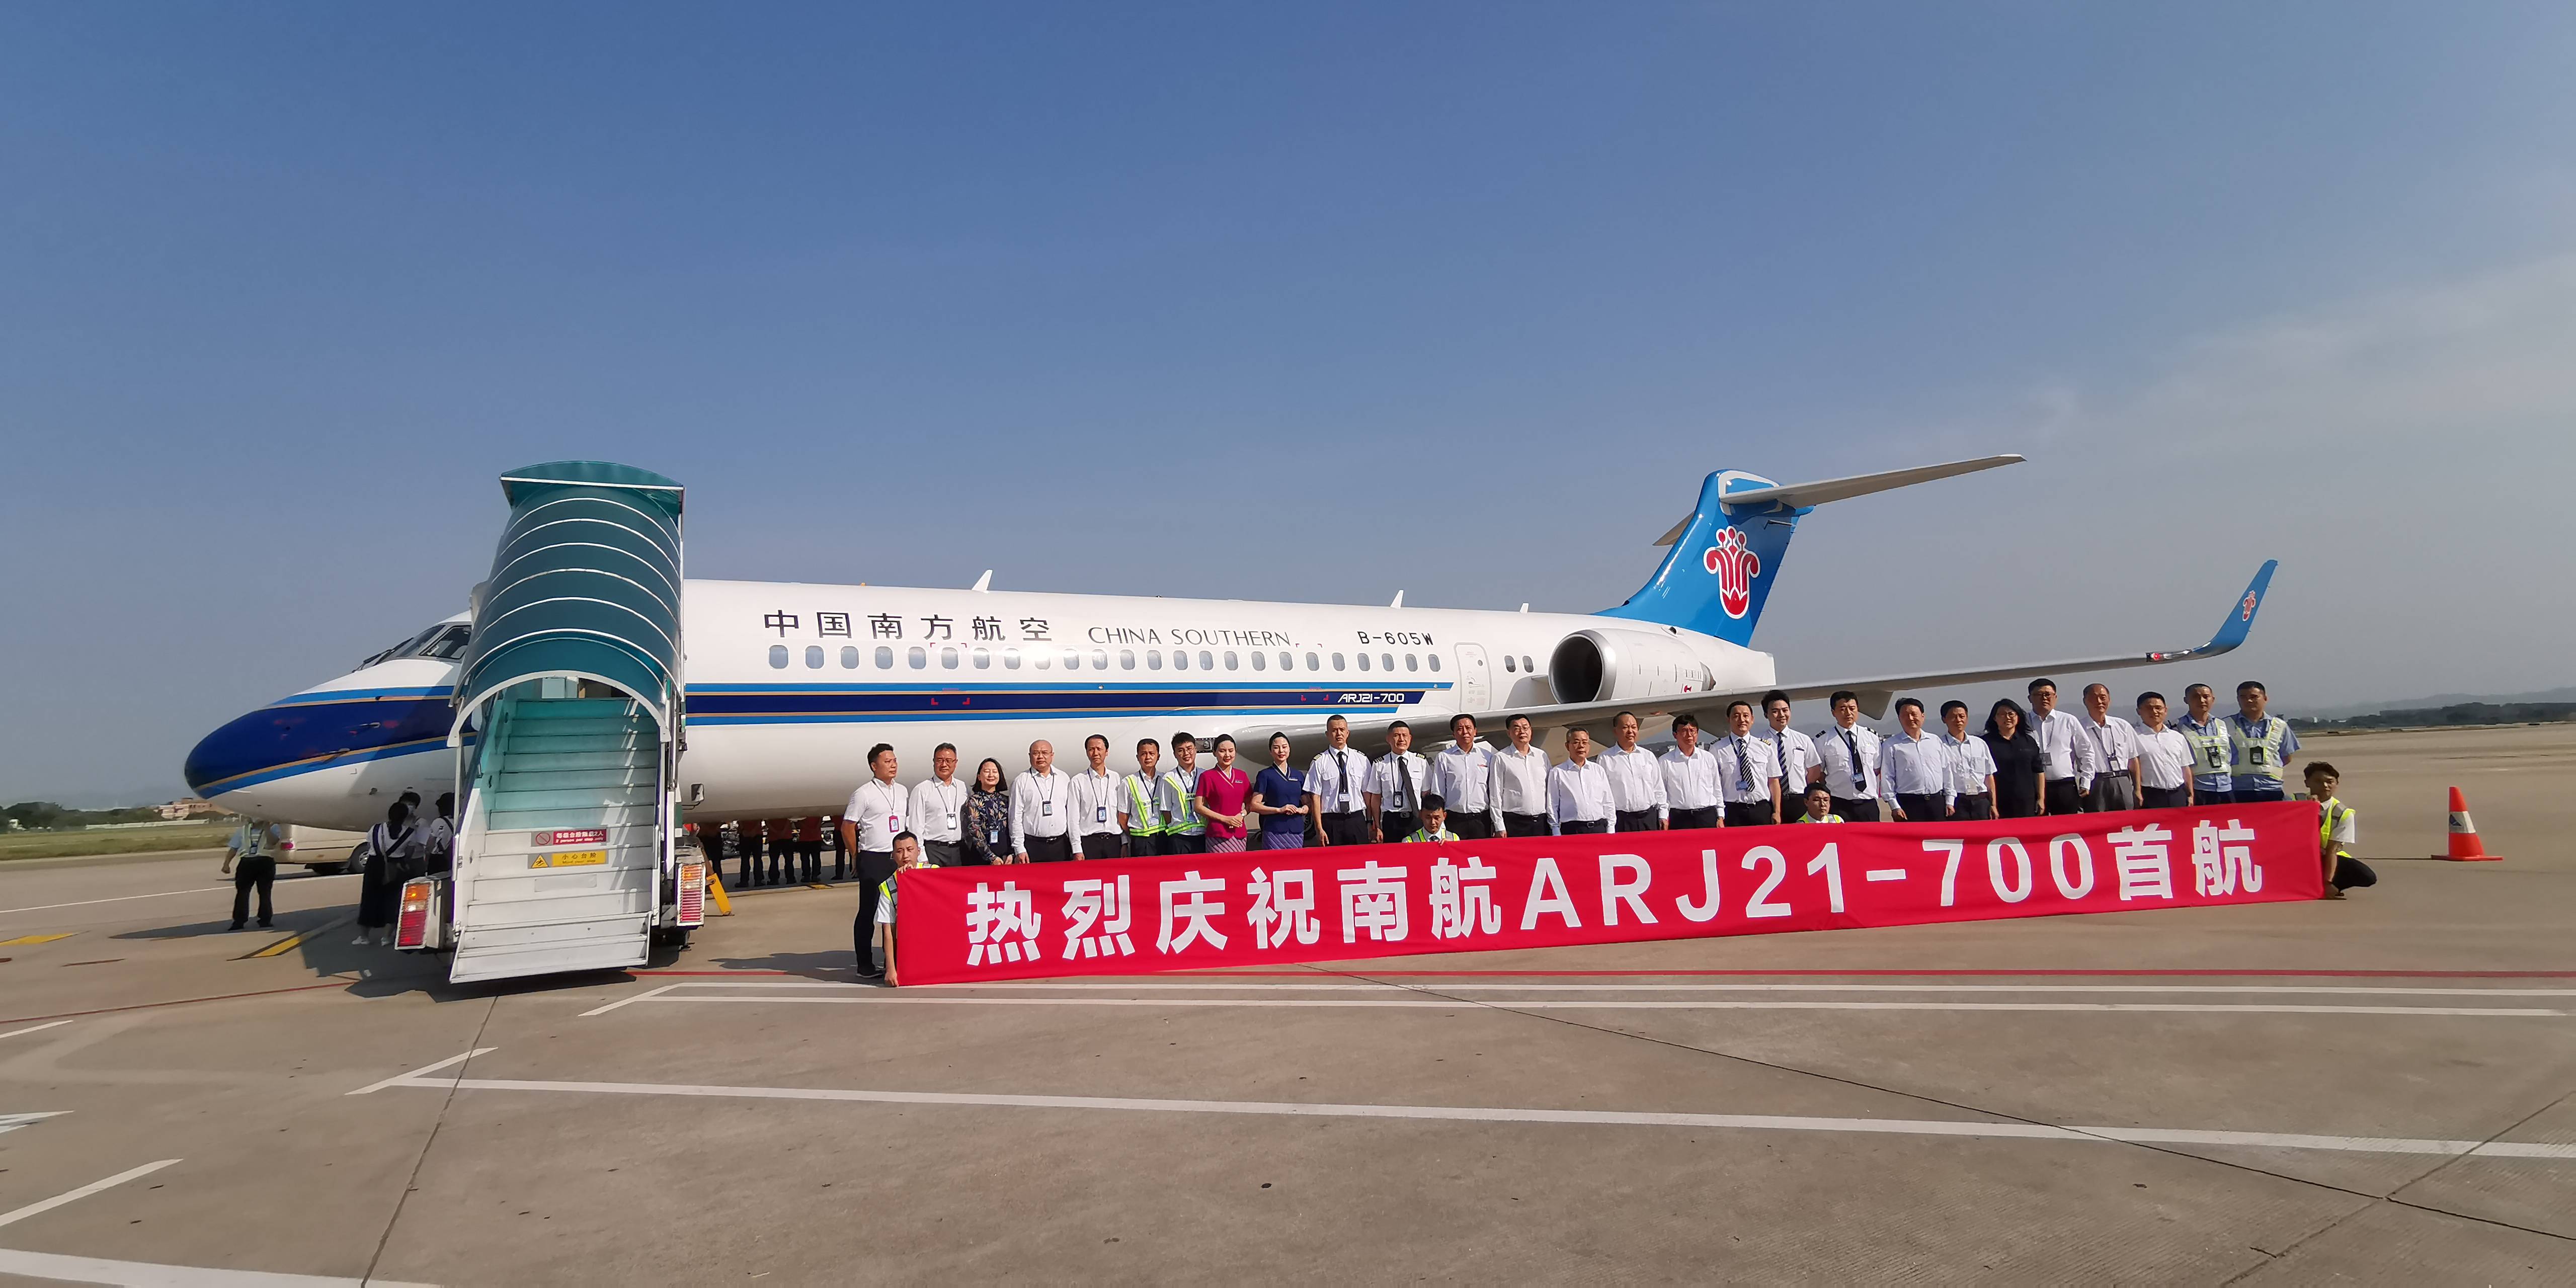 阿娇飞了南航首架国产arj21飞机开始商业运营